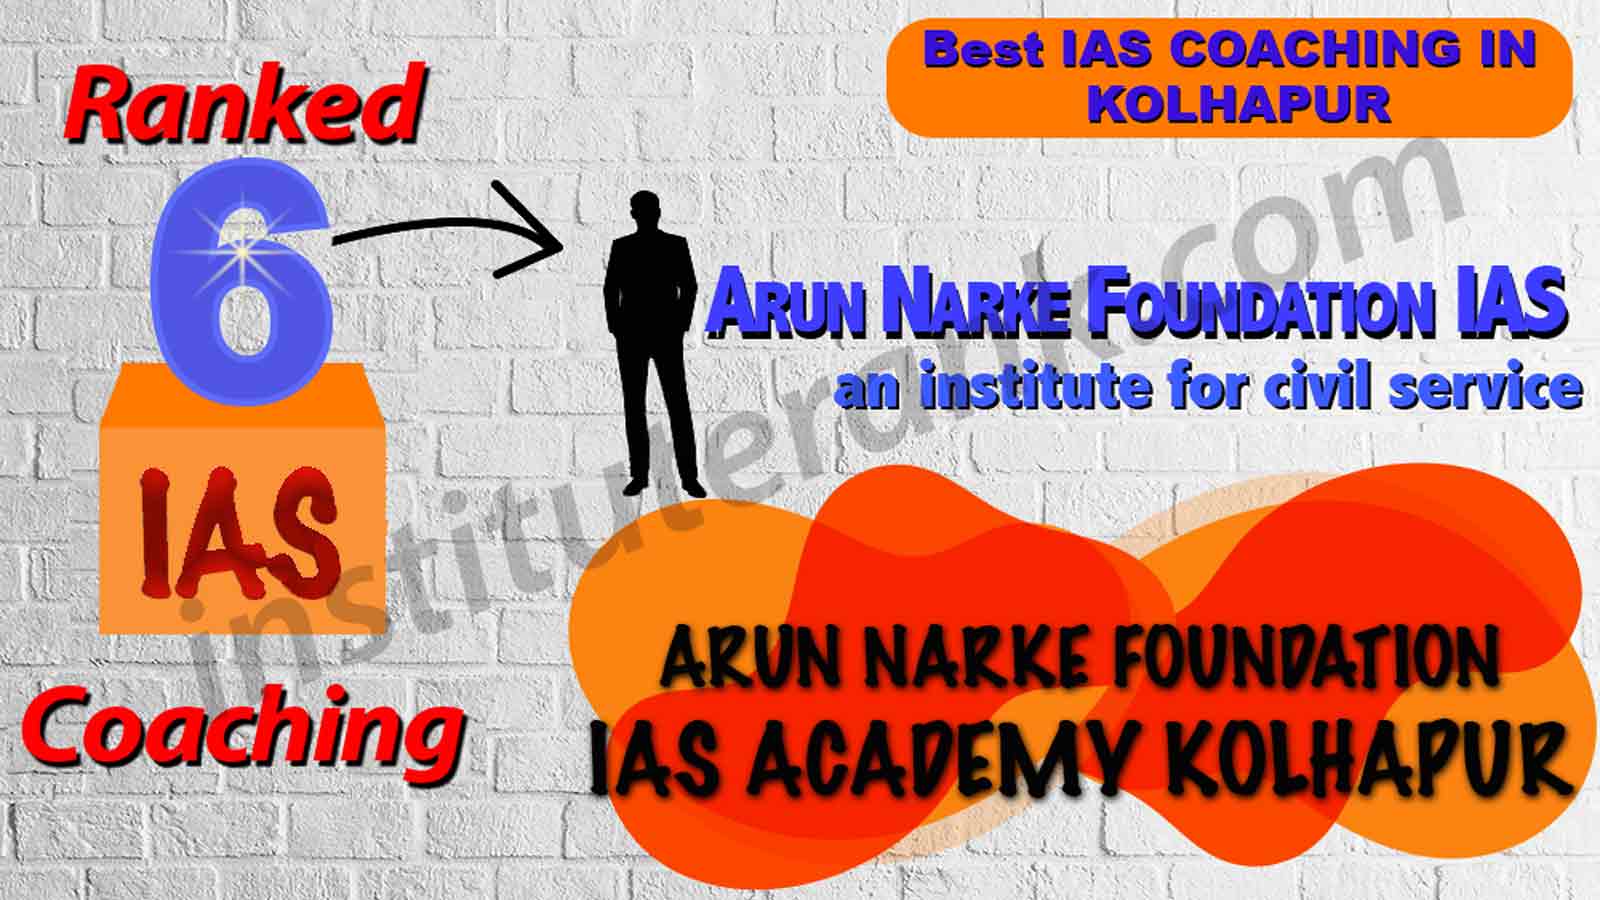 Best IAS Coaching of Kolhapur